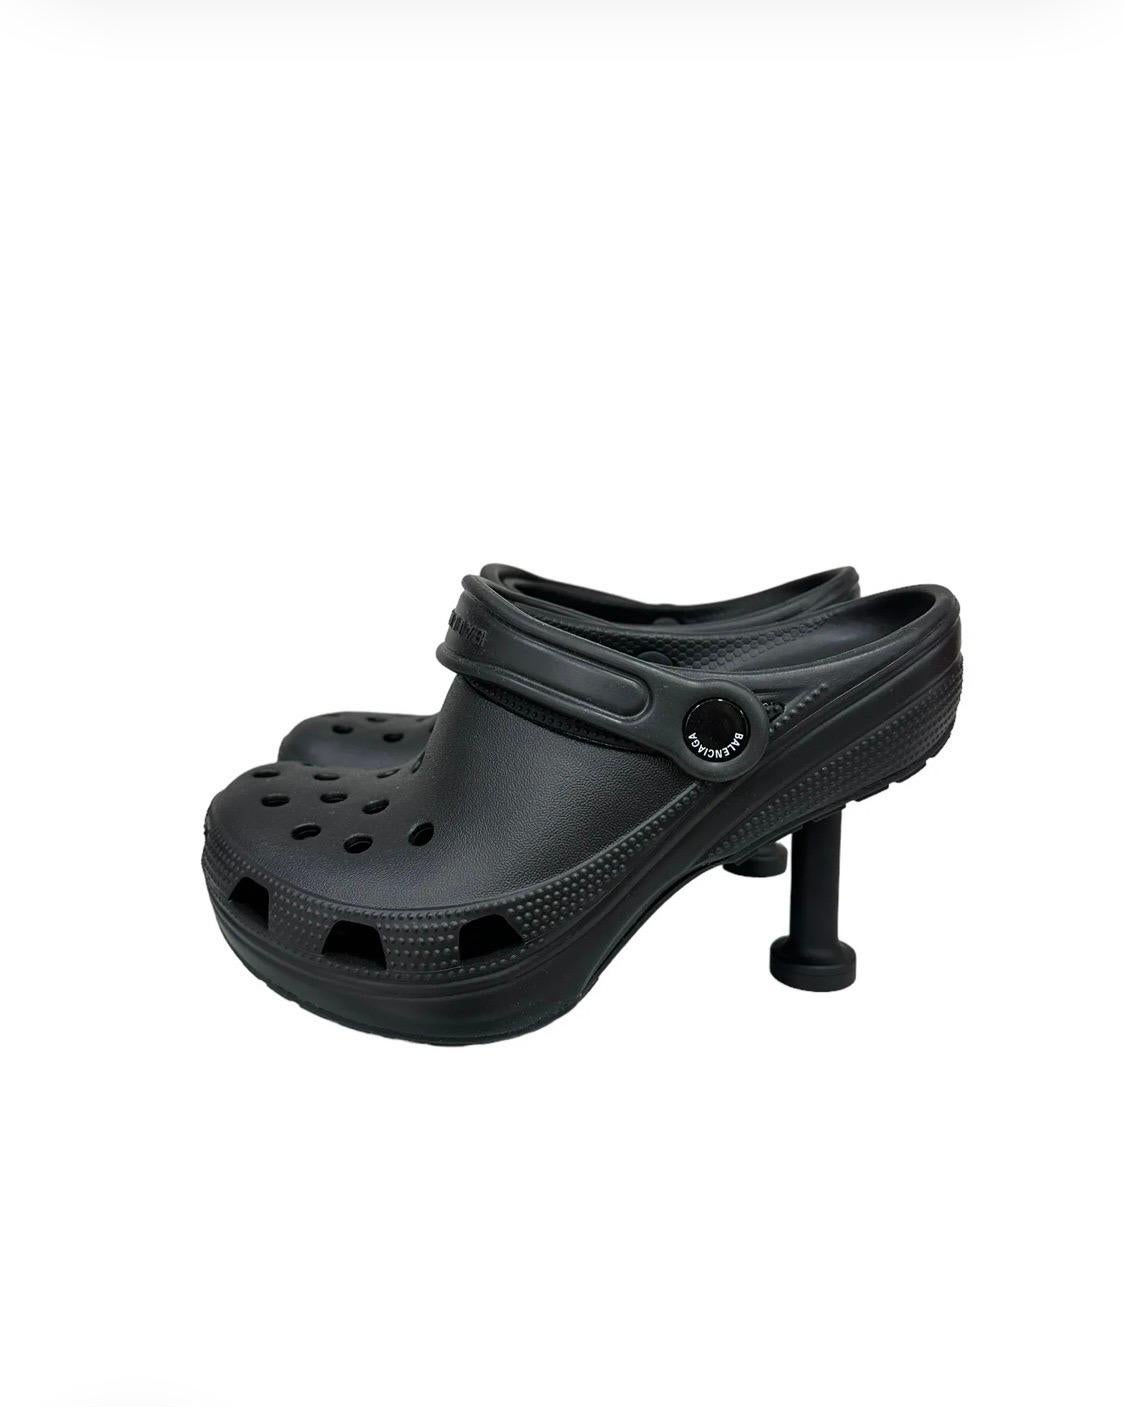 Pump Crocs Madame firmate Balenciaga x Crocs, collezione Clones Limited Edition, realizzata in gomma nera con hardware nero. Présente une pointe arrondi avec un tacco de 8 centimètres. La partie postérieure est dotée d'une bande avec le logo de la